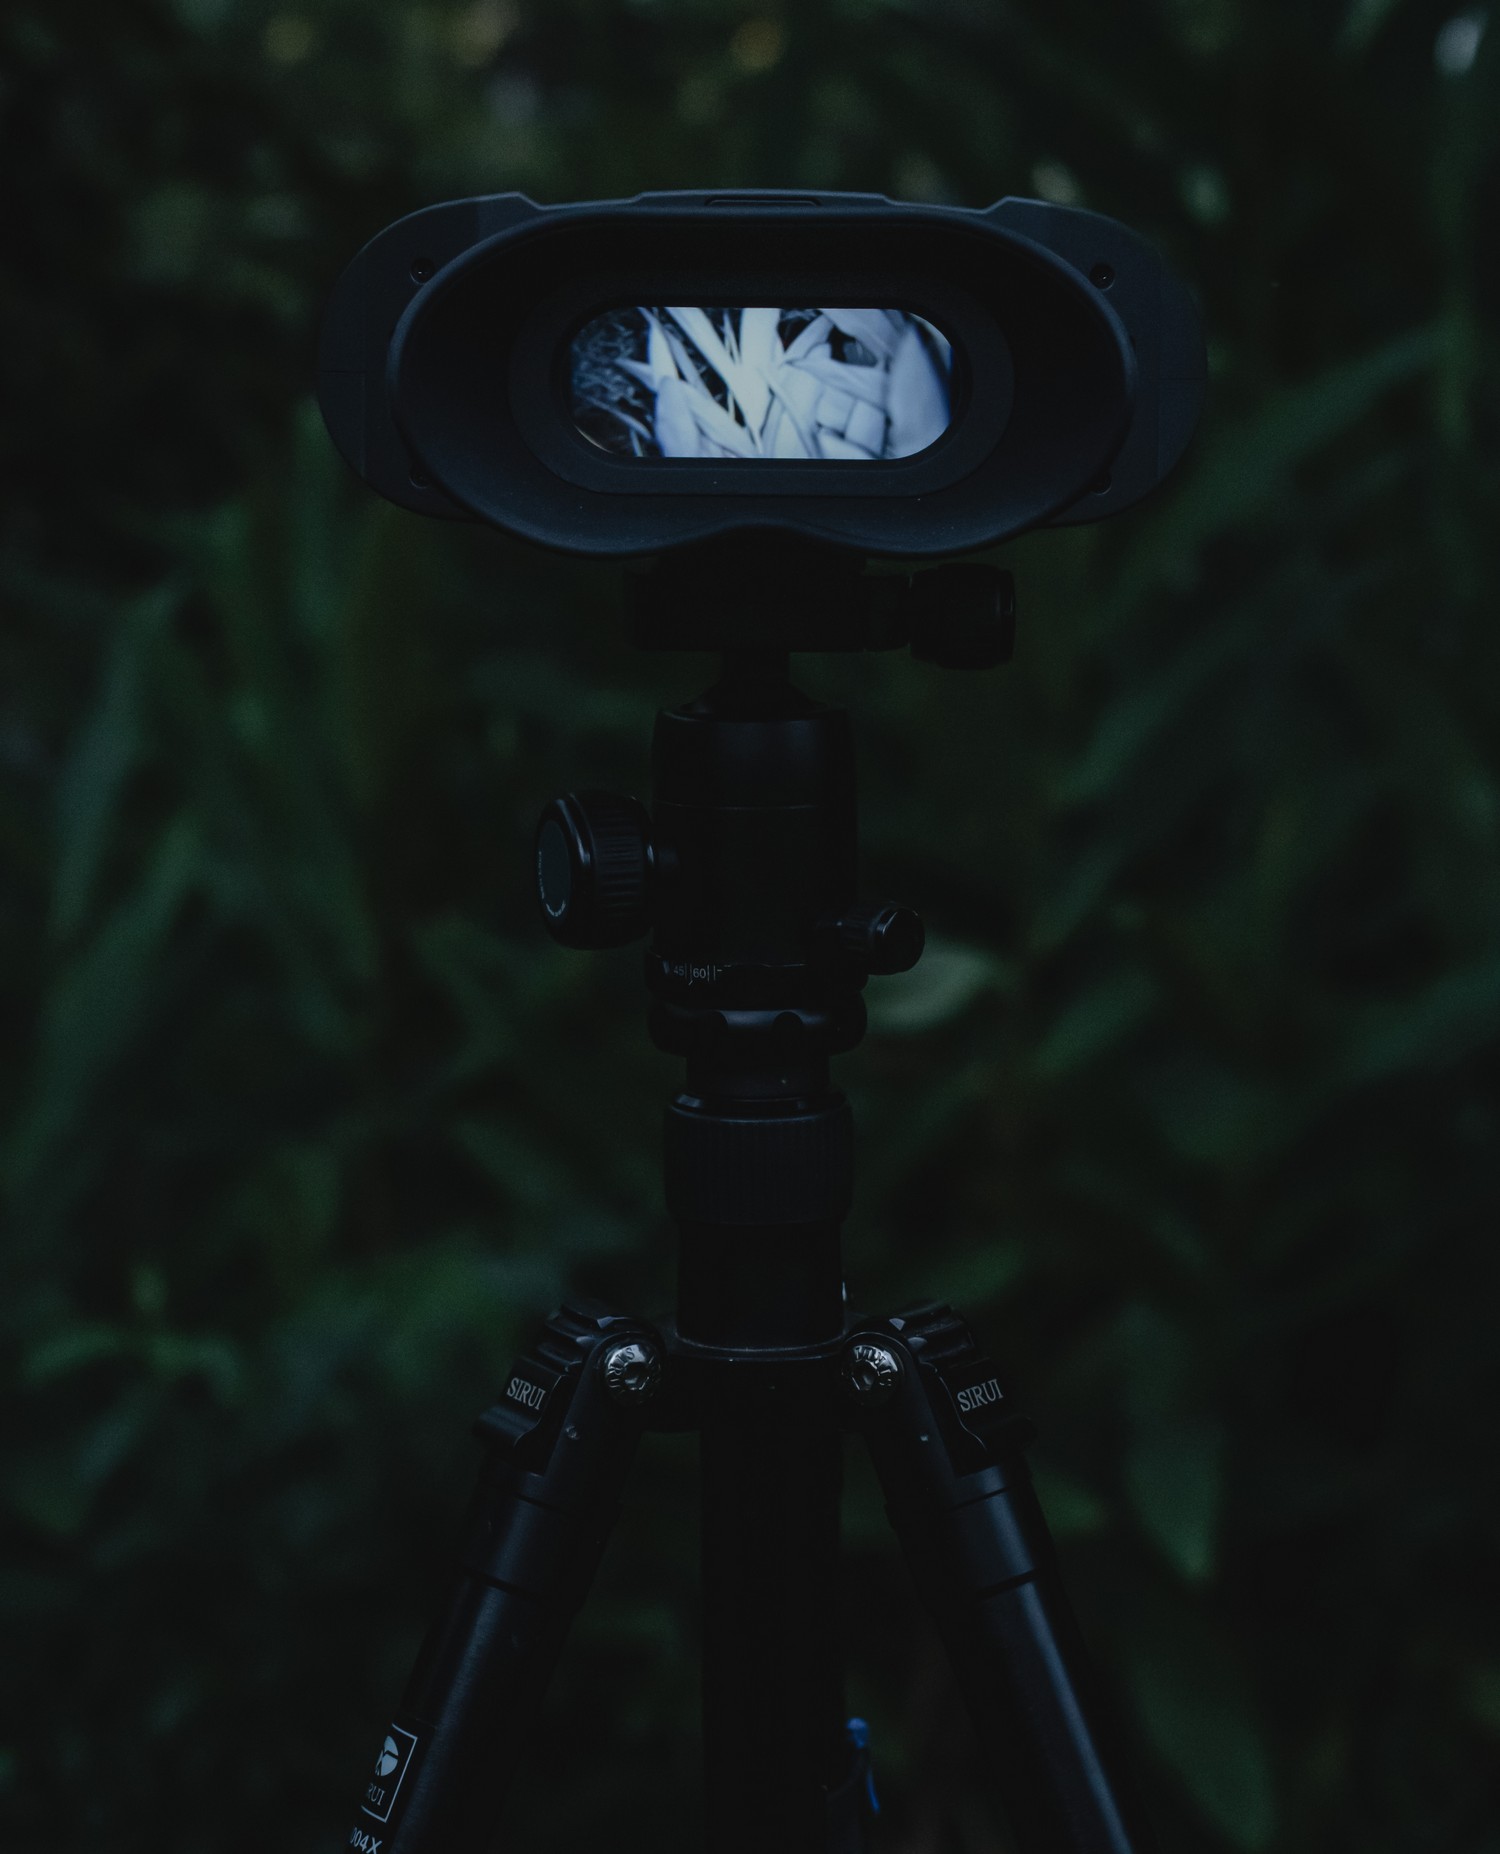 دید در شب NVB 200 - تغییر خودکار حالت دوگانه روز و شب